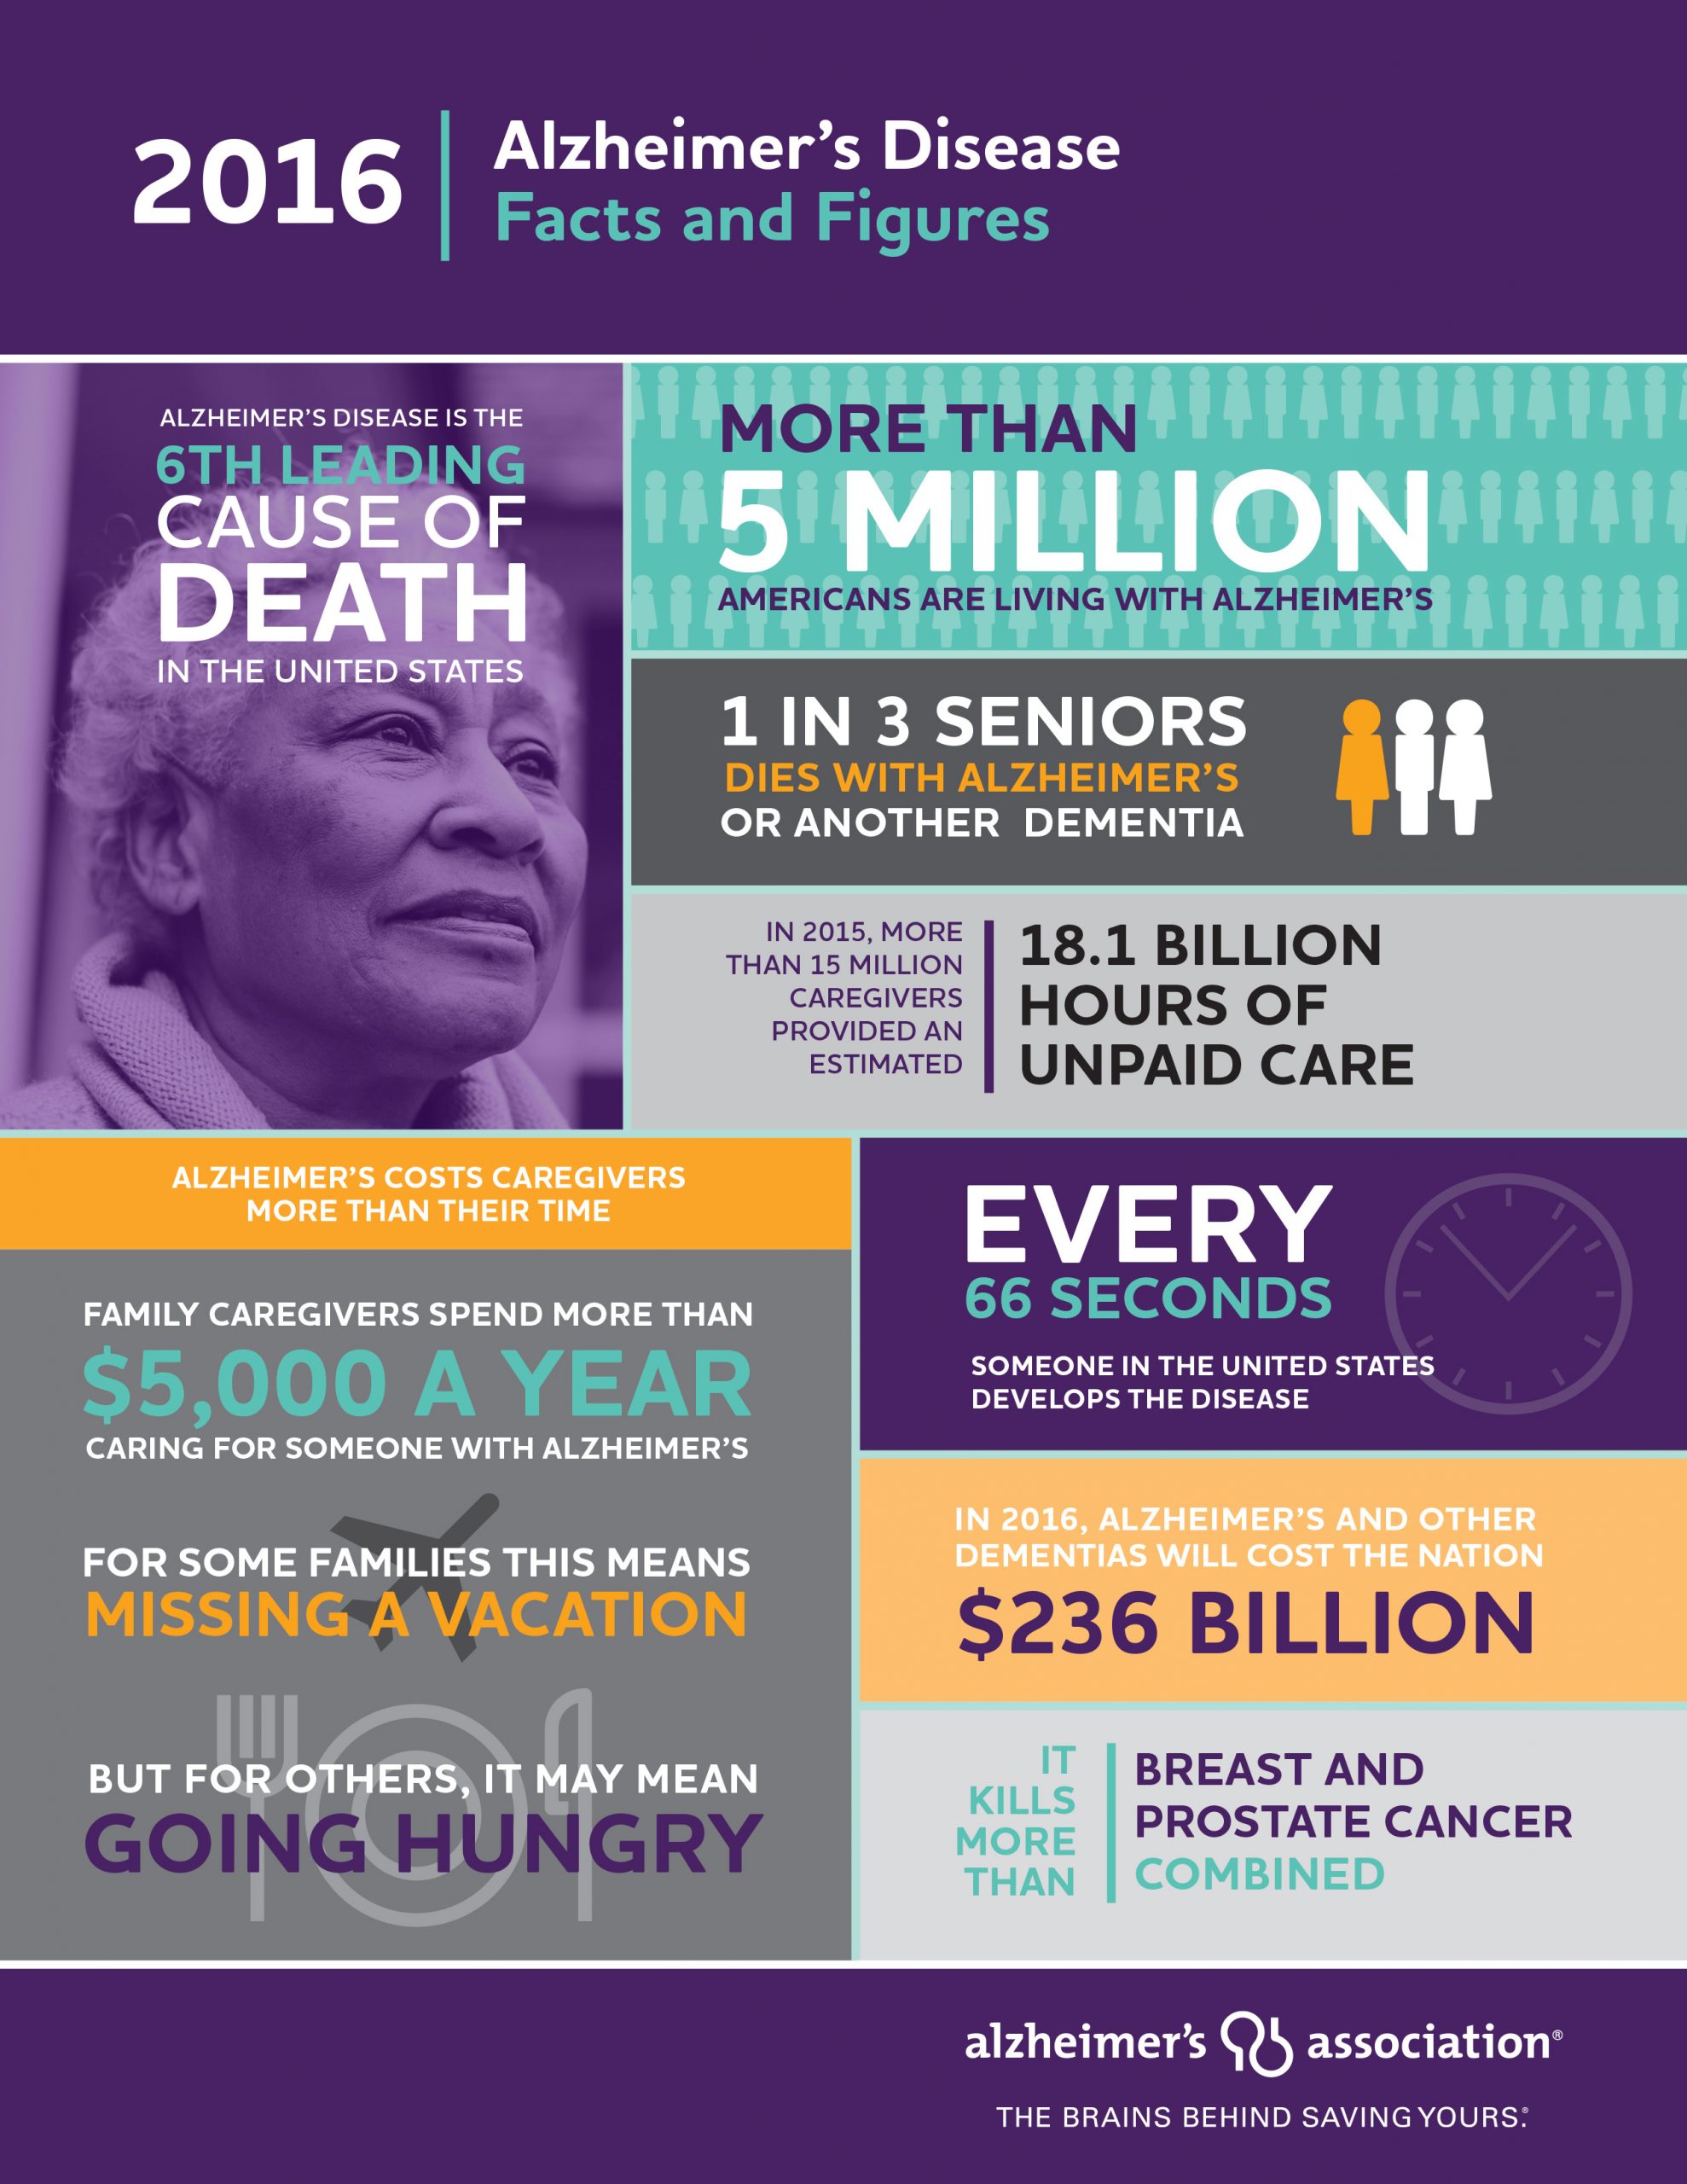 Alzheimerâs Association releases 2016 Alzheimerâs Disease Facts and ...